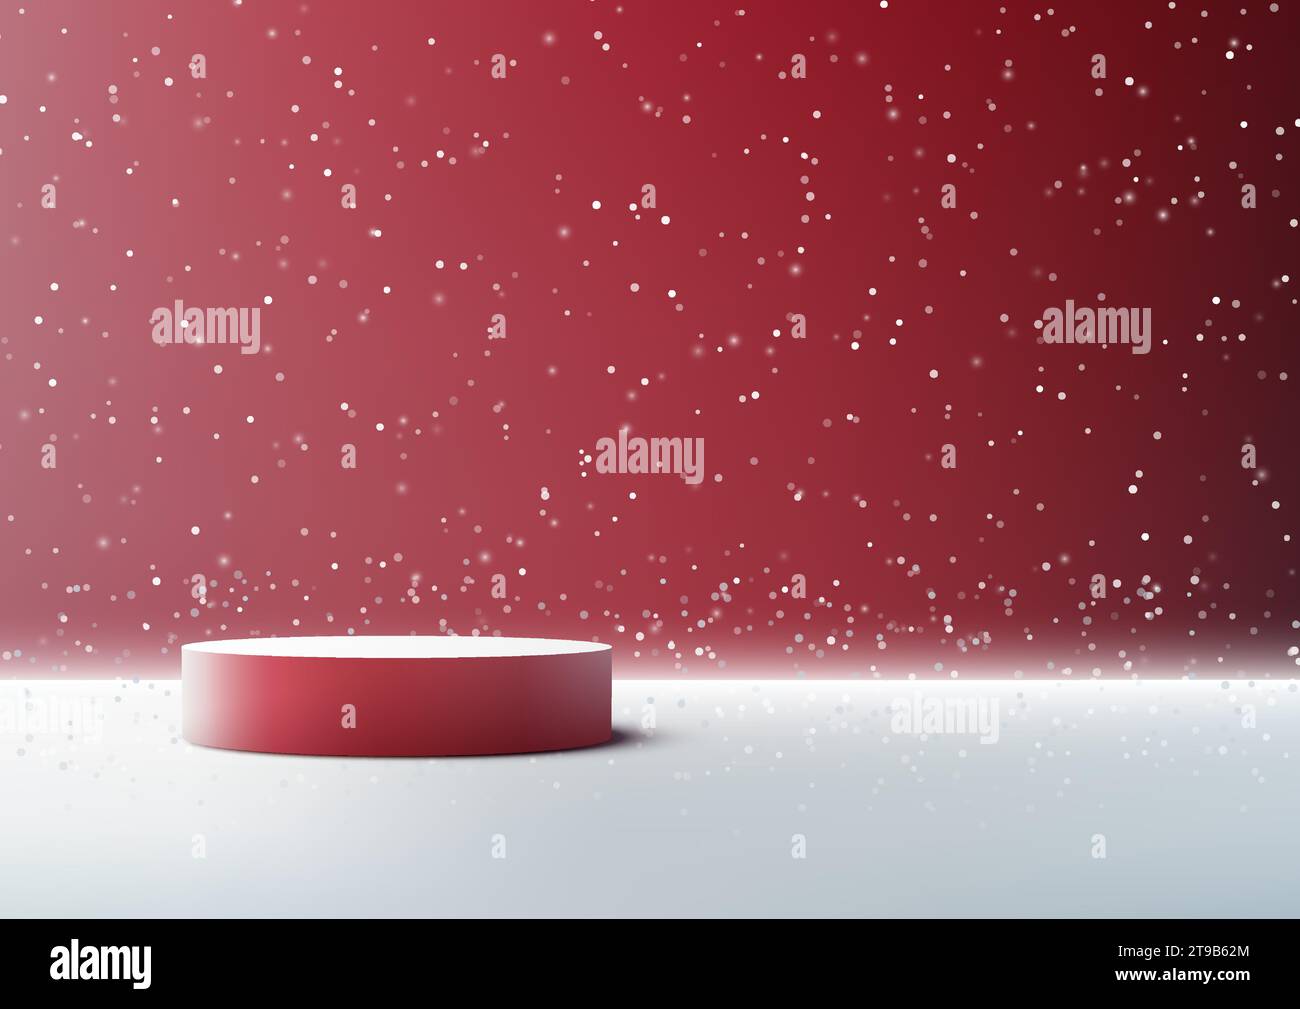 Il podio rosso 3D con sfondo innevato è perfetto per mostrare i prodotti natalizi e invernali. Ideale per mockup, espositori, showroom e. Illustrazione Vettoriale